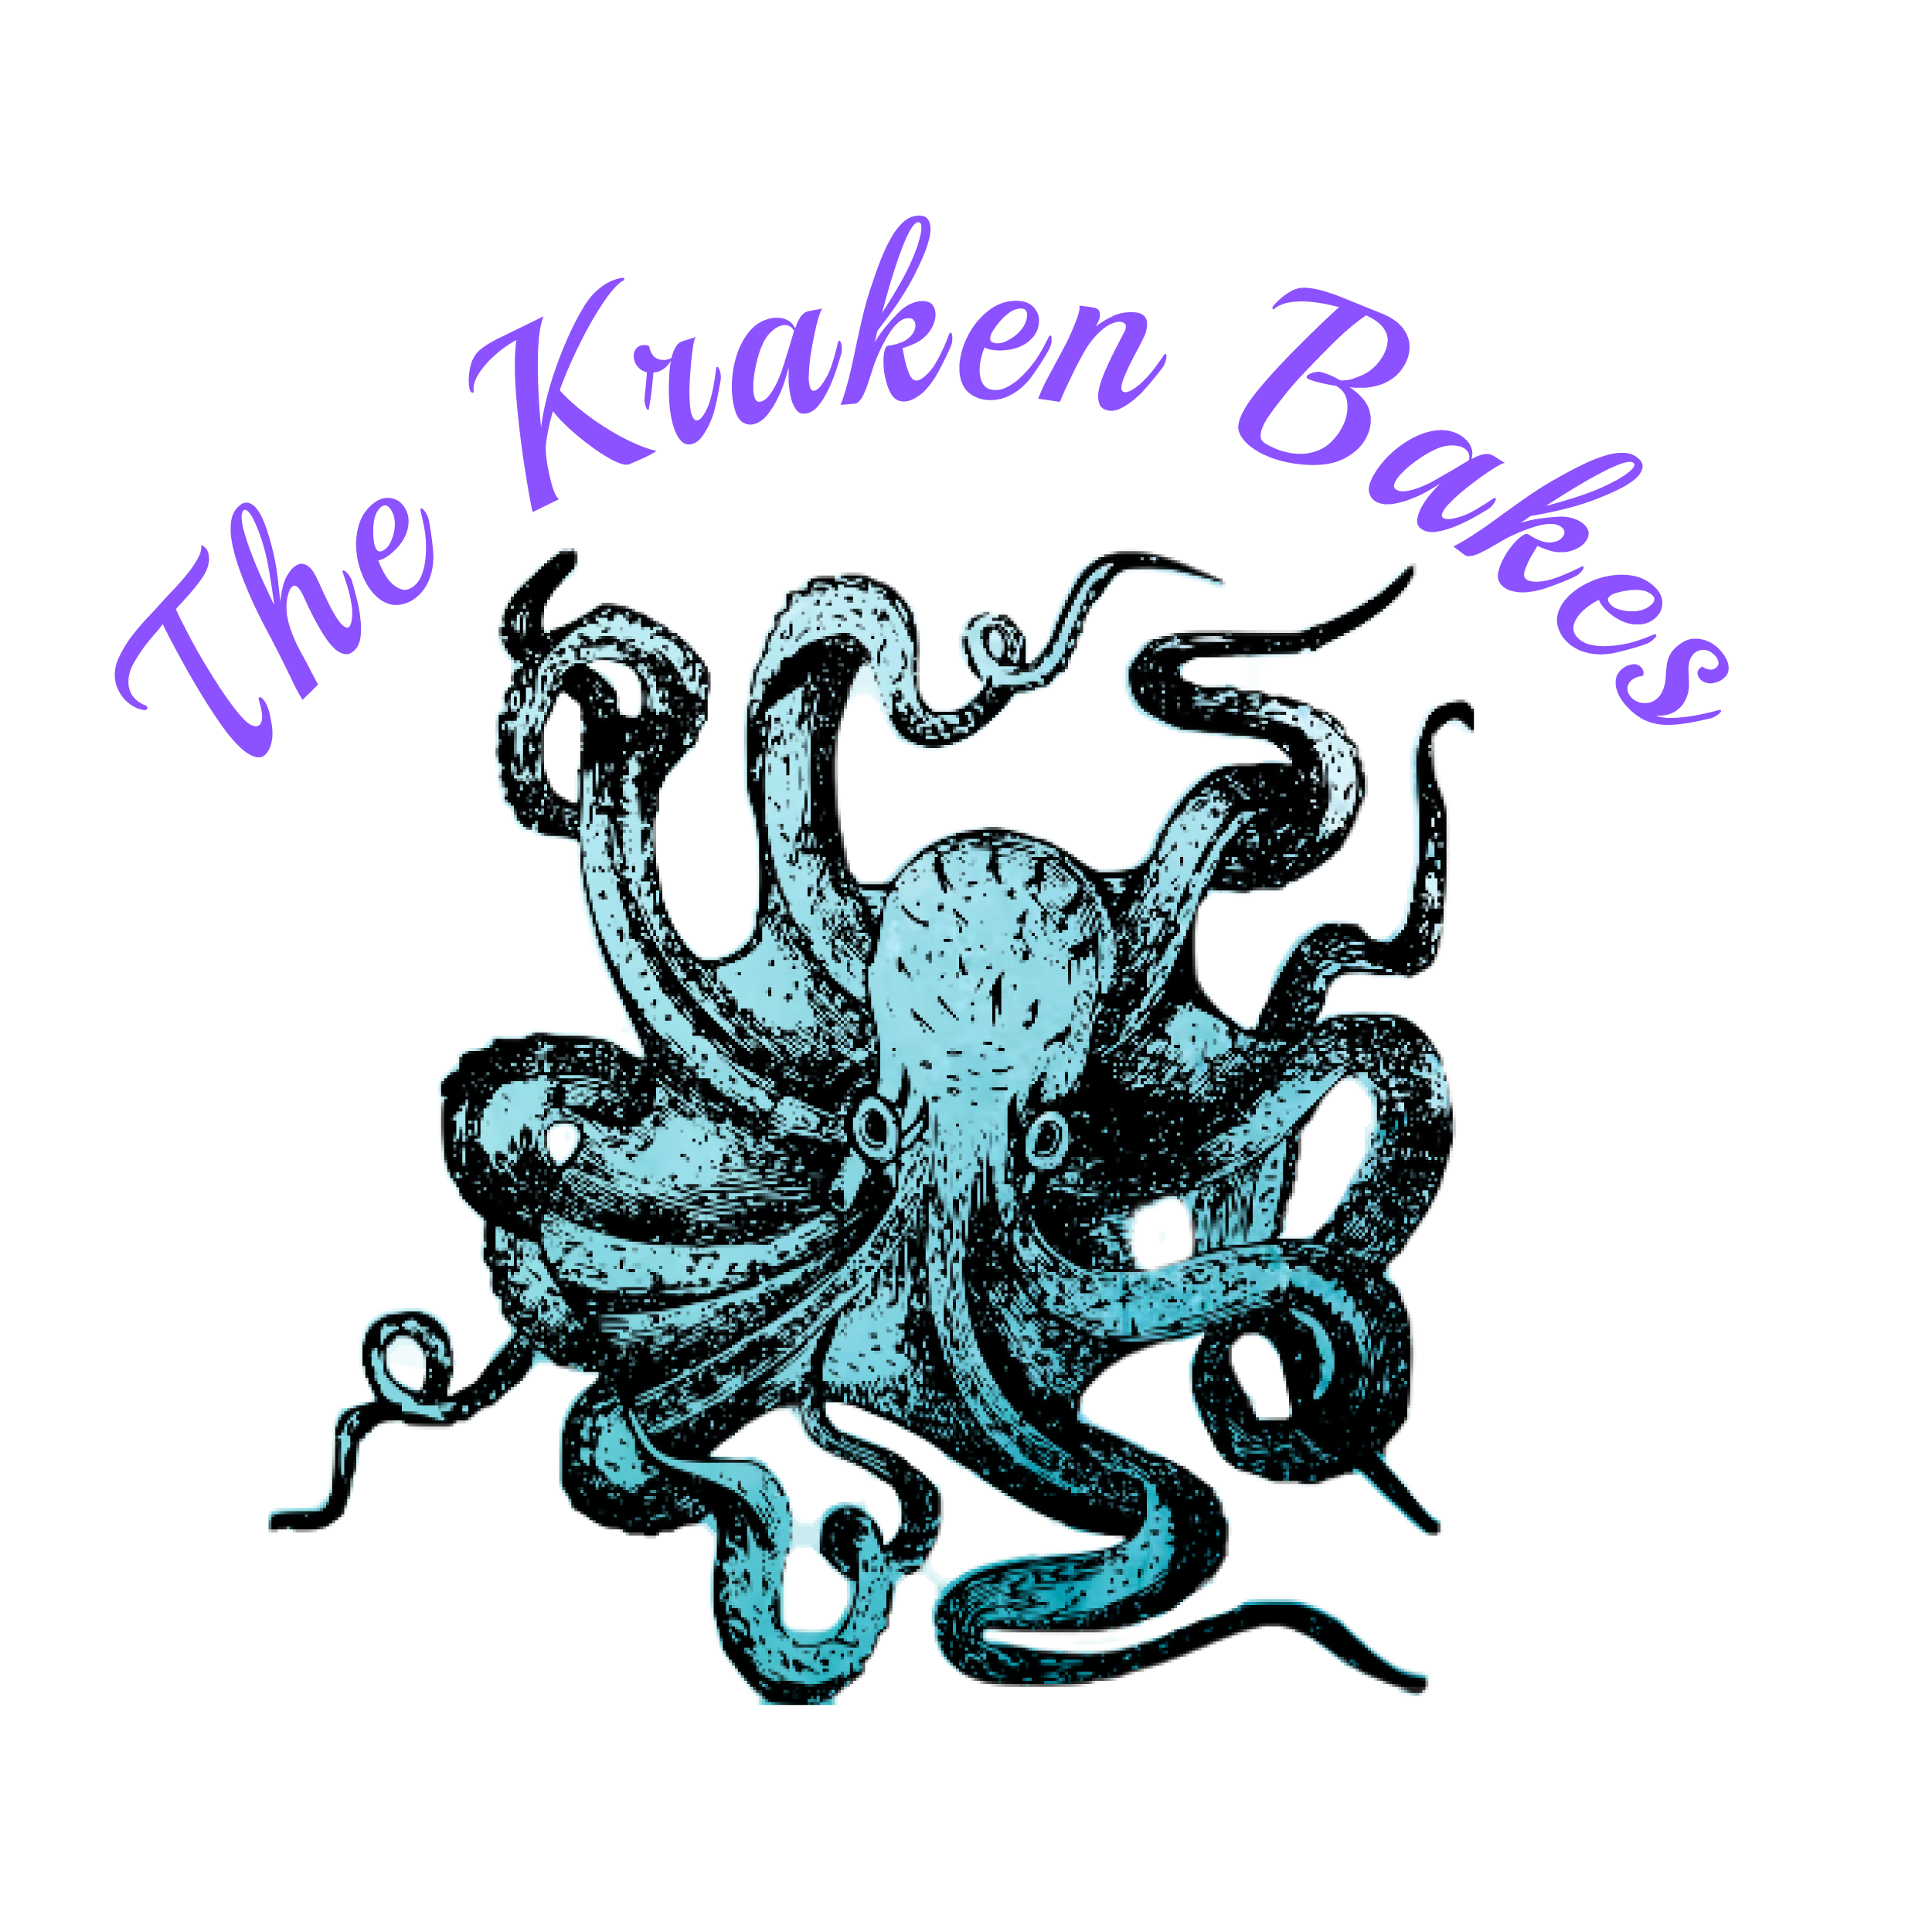 The Kraken Bakes